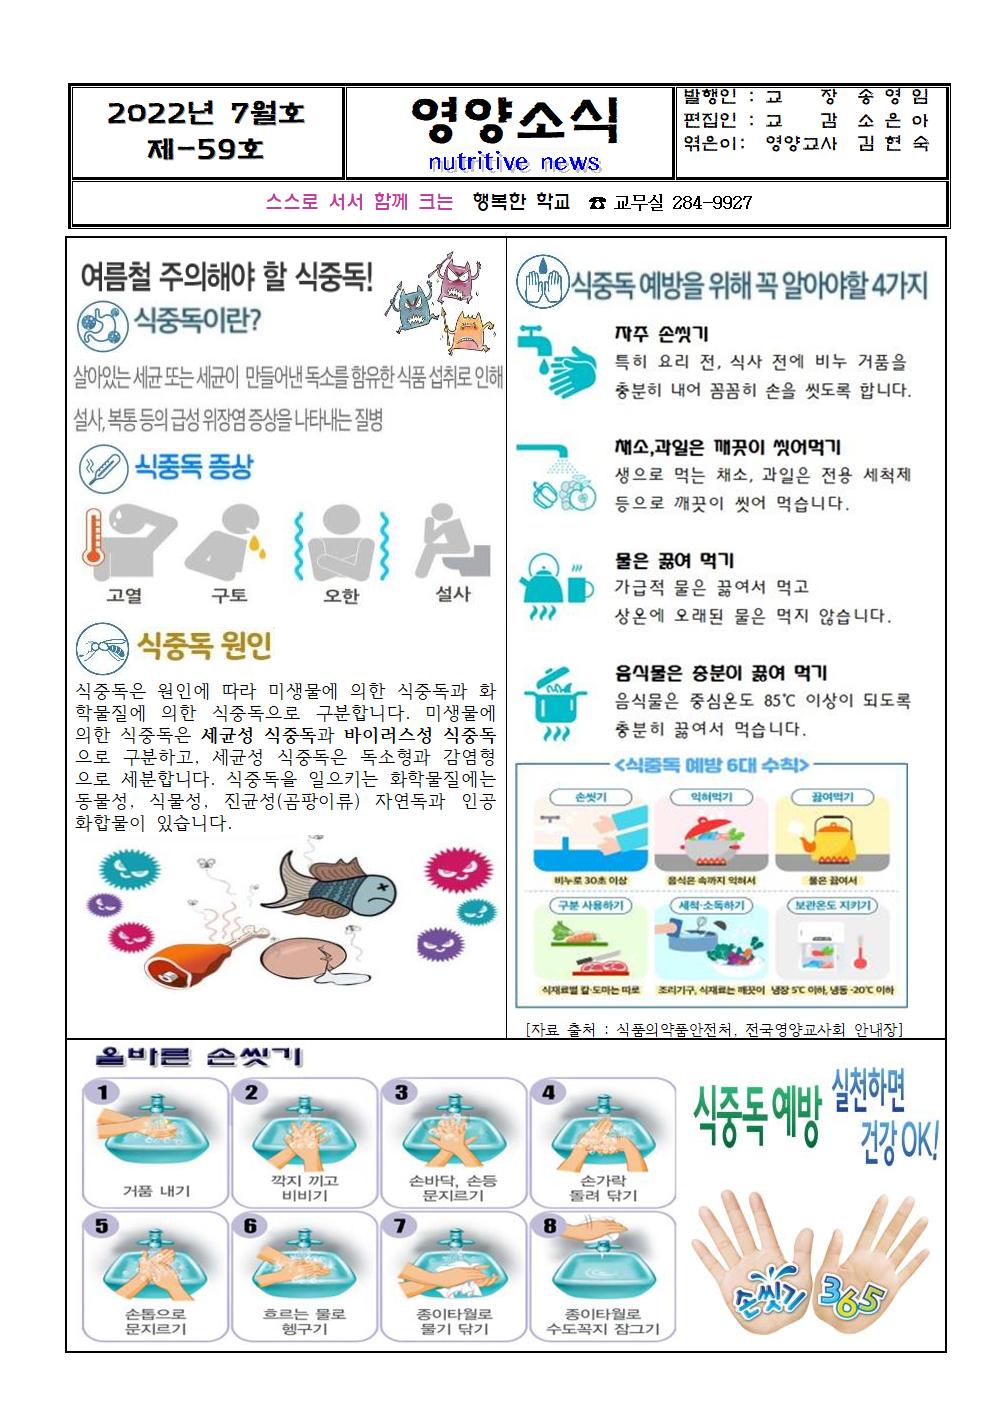 제59호 - 7월 영양소식지(식중독)001